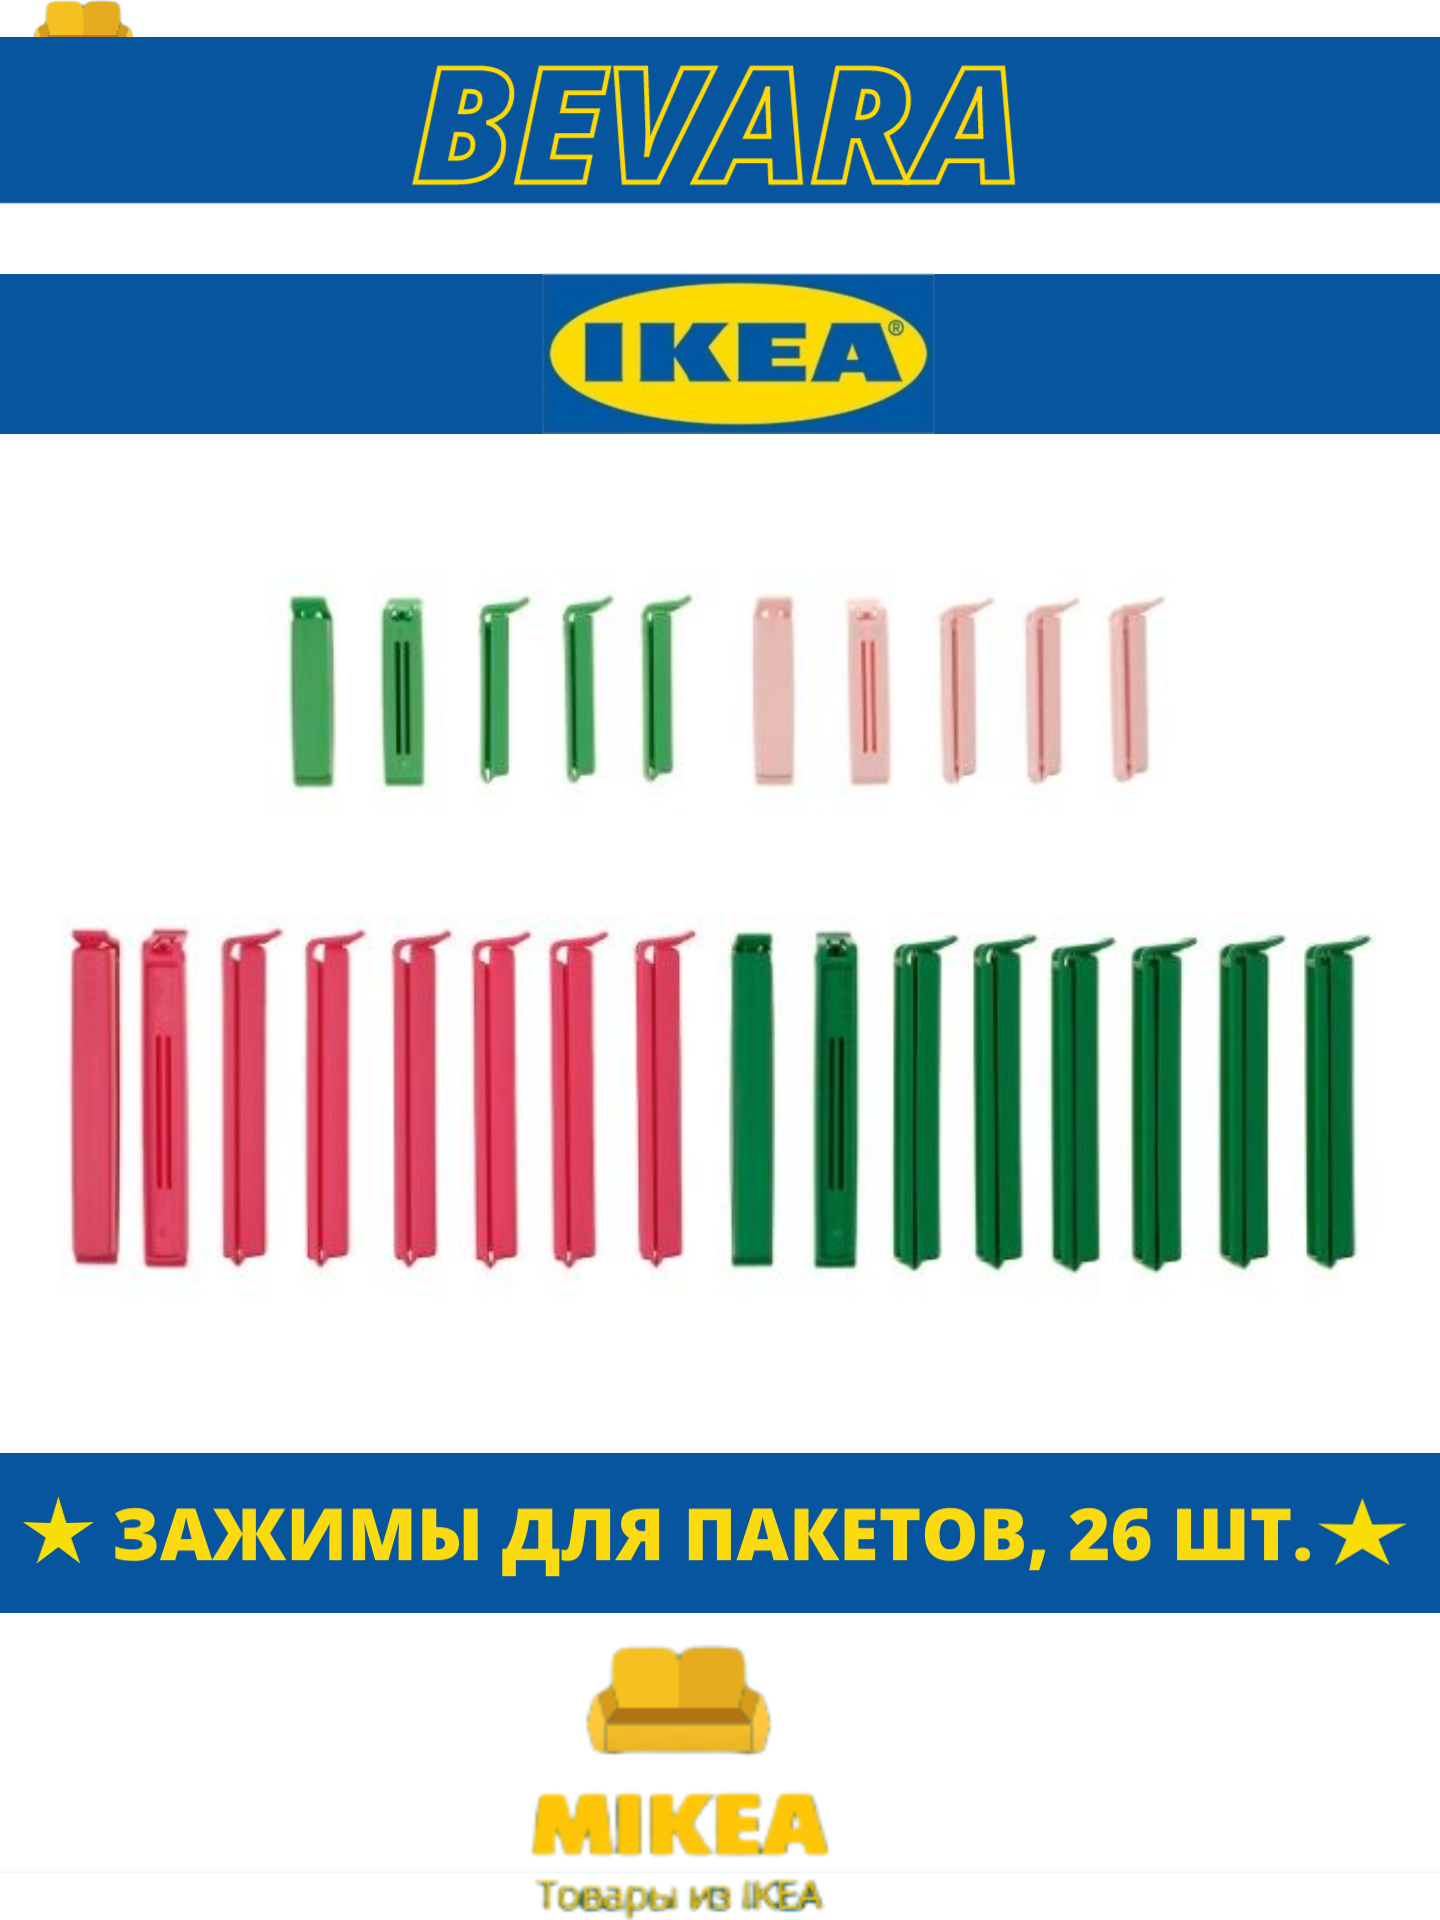 Зажимы для пакетов, 26 шт, разные цвета IKEA BEVARA бевара